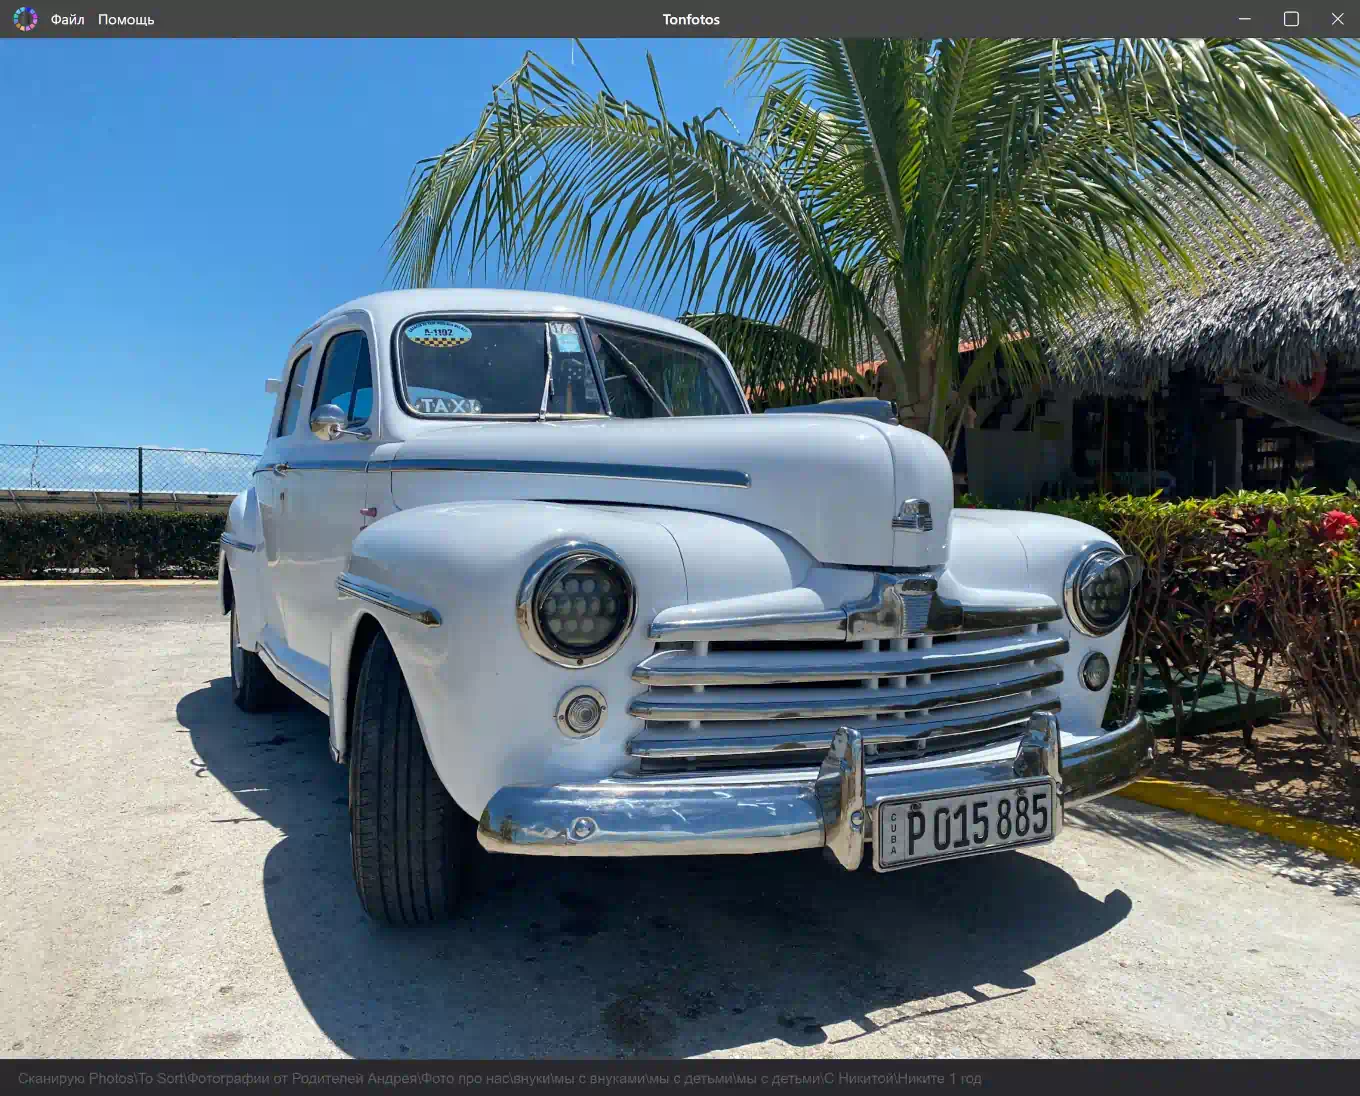 Просмотр фотографии антикварного автомобиля на острове Куба в приложении Tonfotos